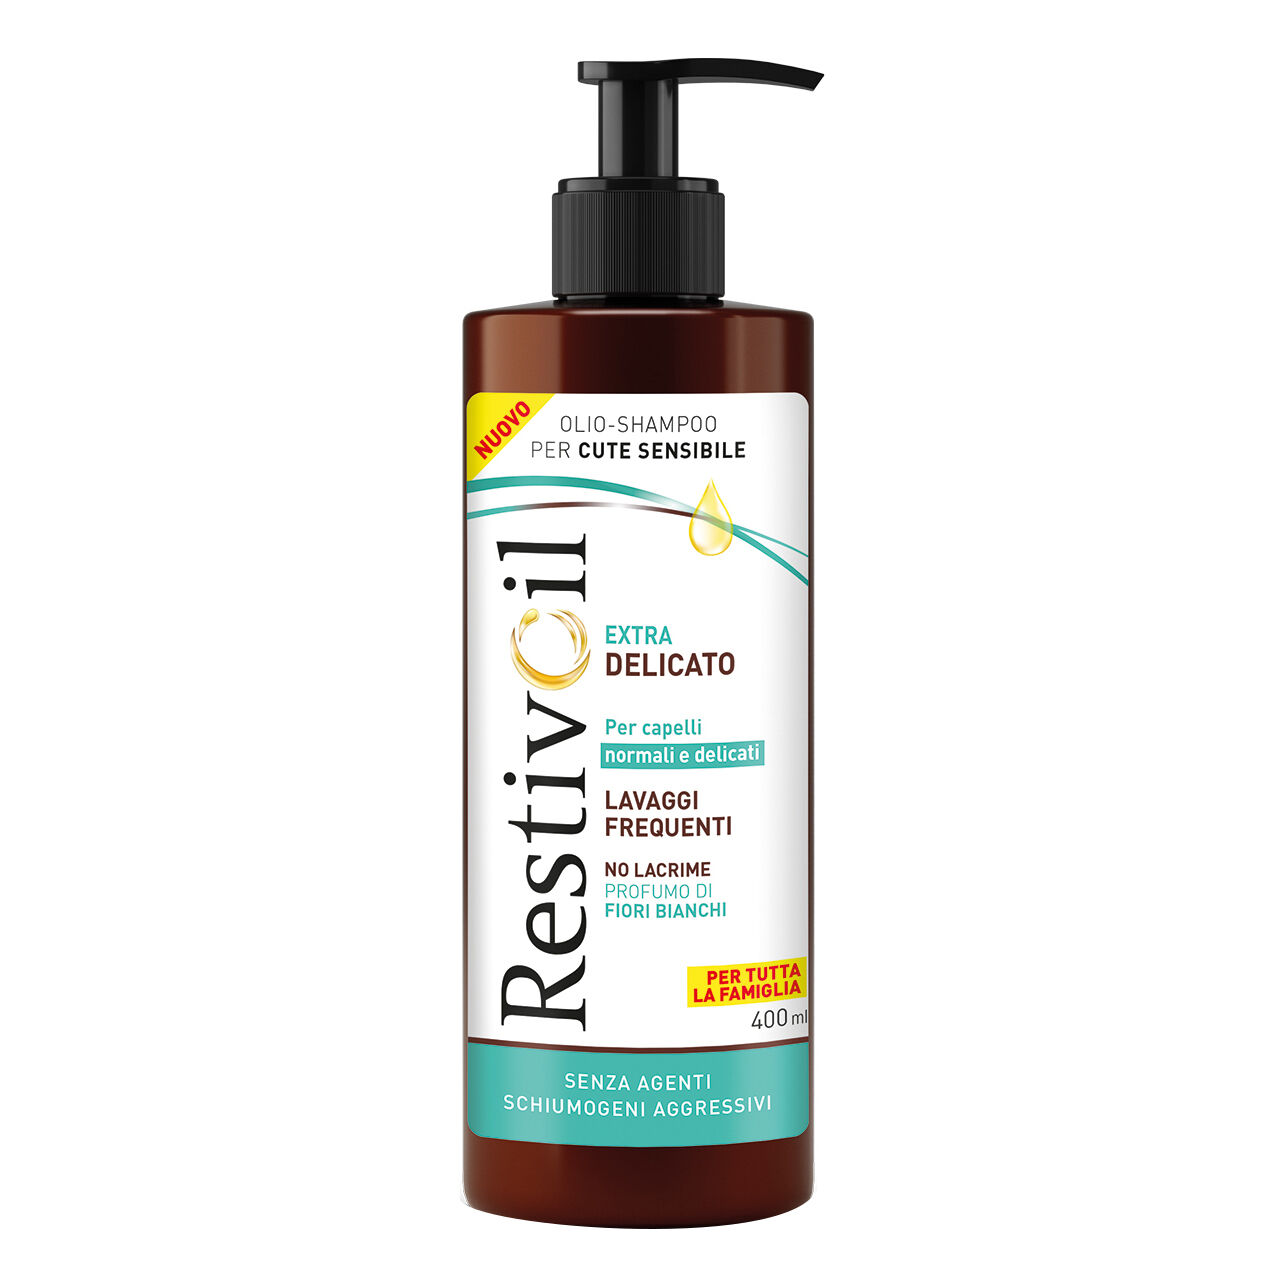 restiv-oil restivoil extra delicato olio shampoo capelli normali e delicati 400 ml